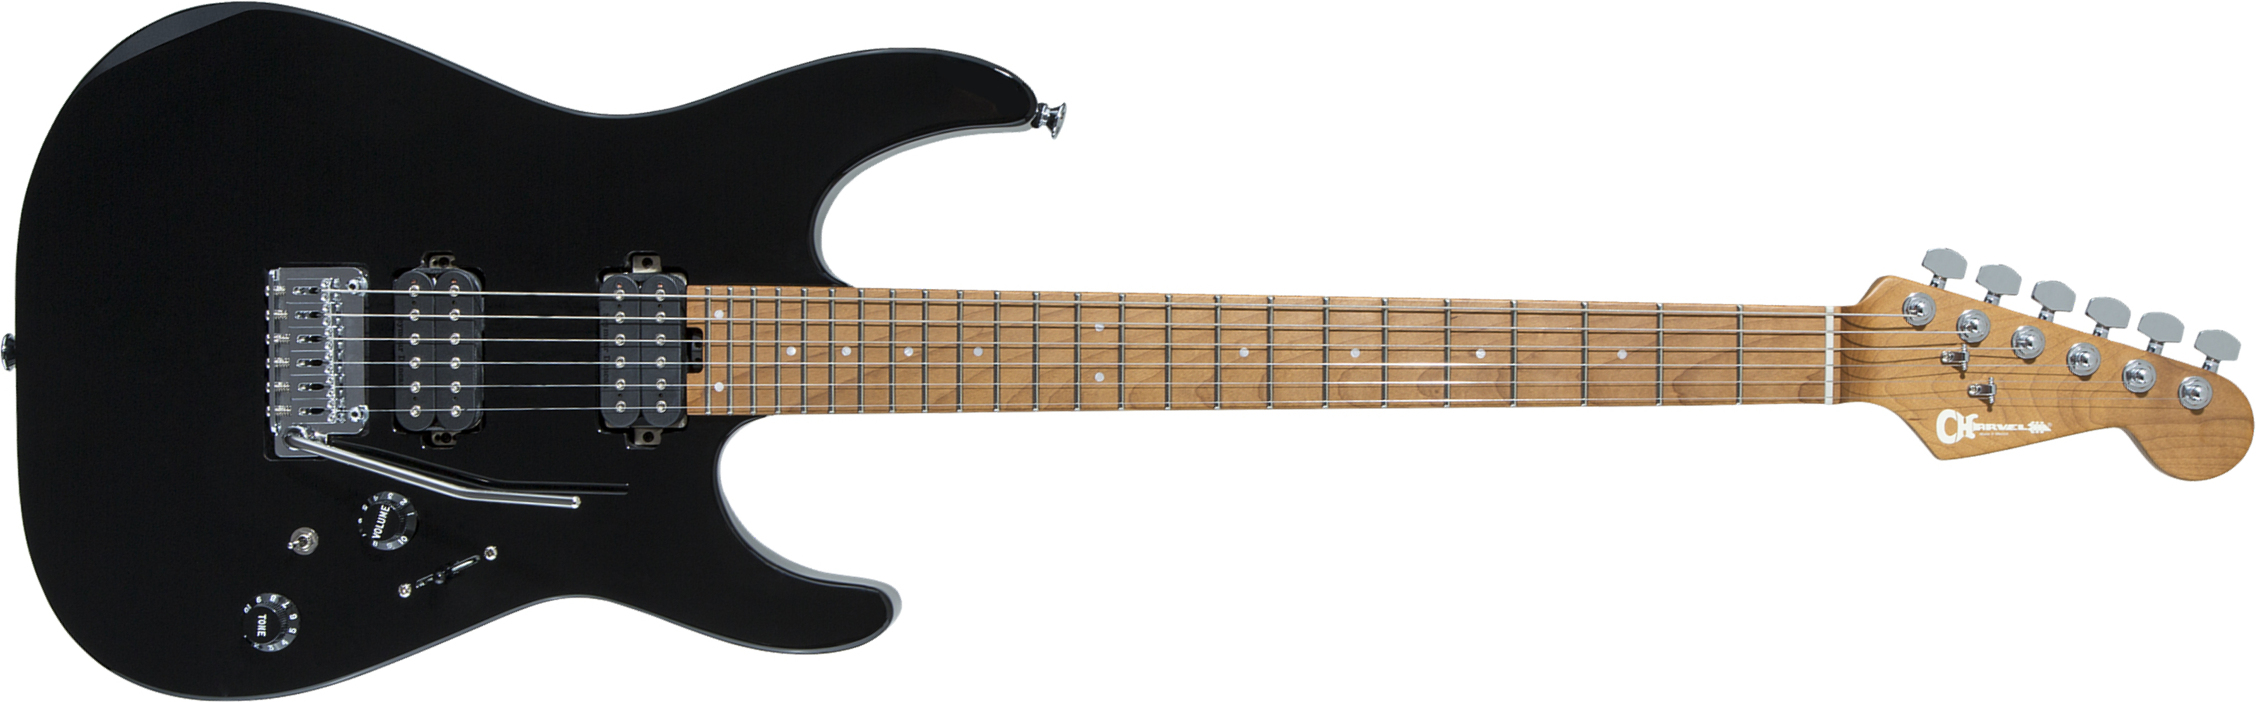 Charvel Pro-mod Dk24 Hh 2pt Cm Seymour Duncan Trem Mn - Black - Str shape electric guitar - Main picture